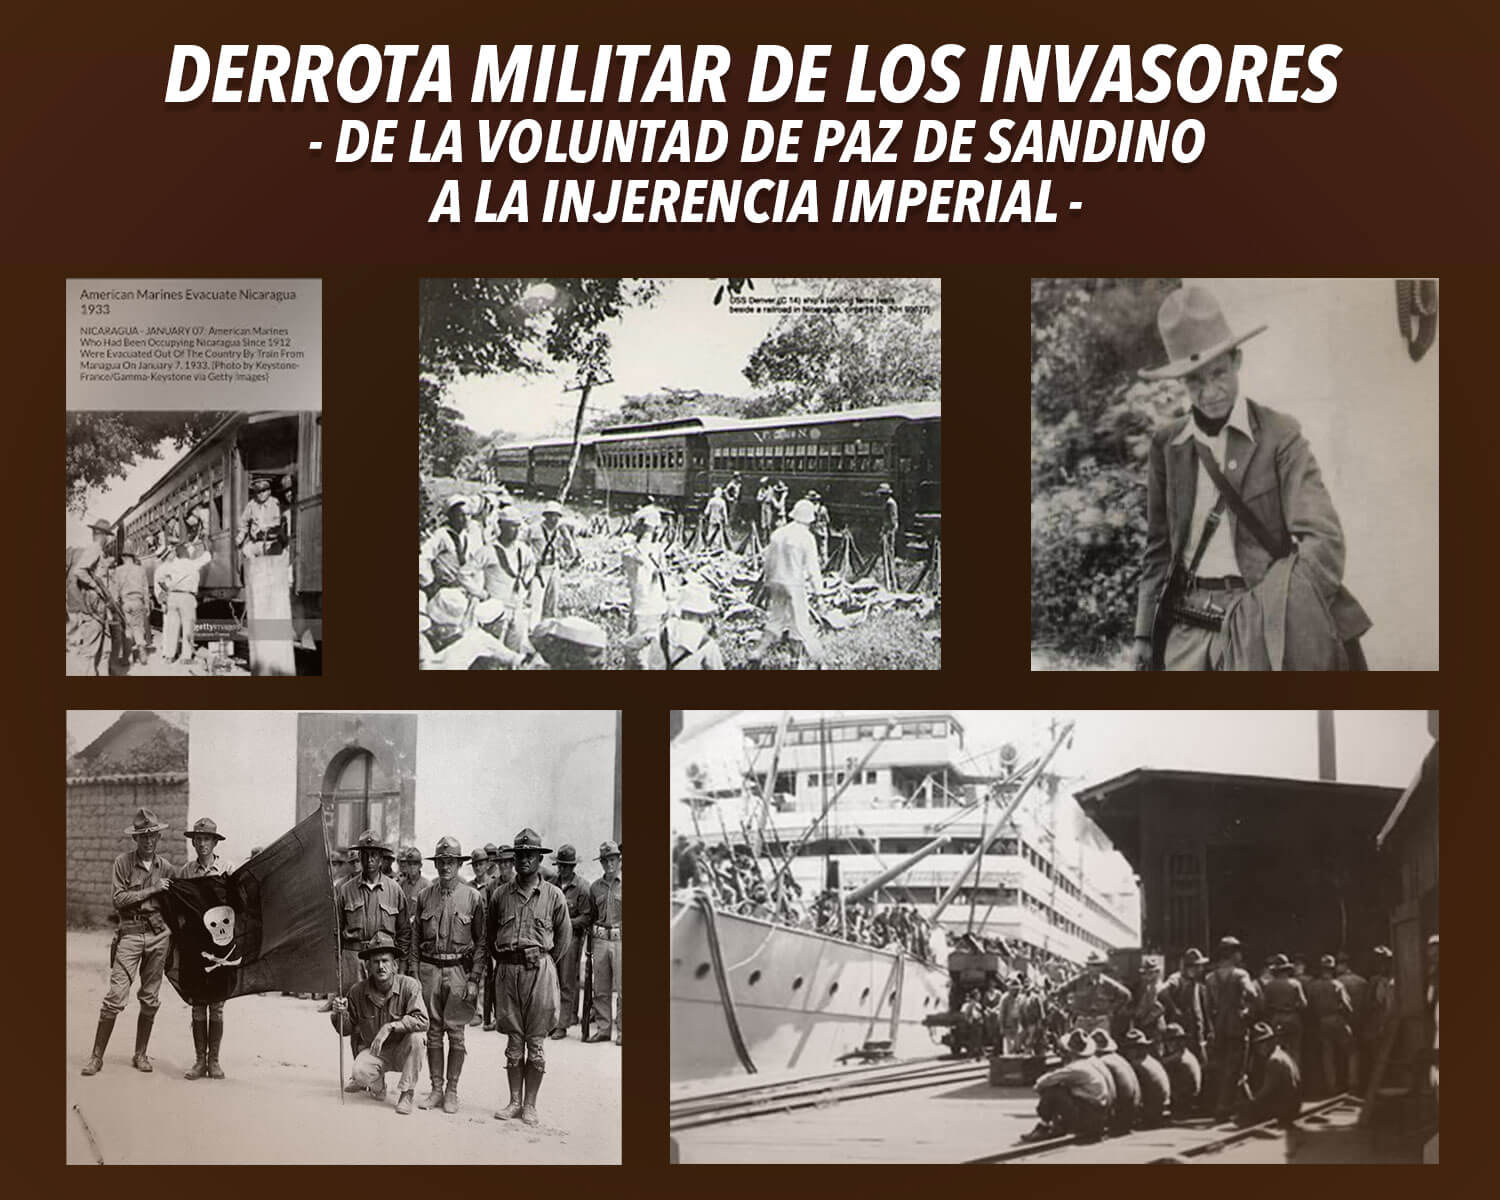 DERROTA MILITAR DE LOS INVASORES - De la voluntad de paz de Sandino a la injerencia imperial